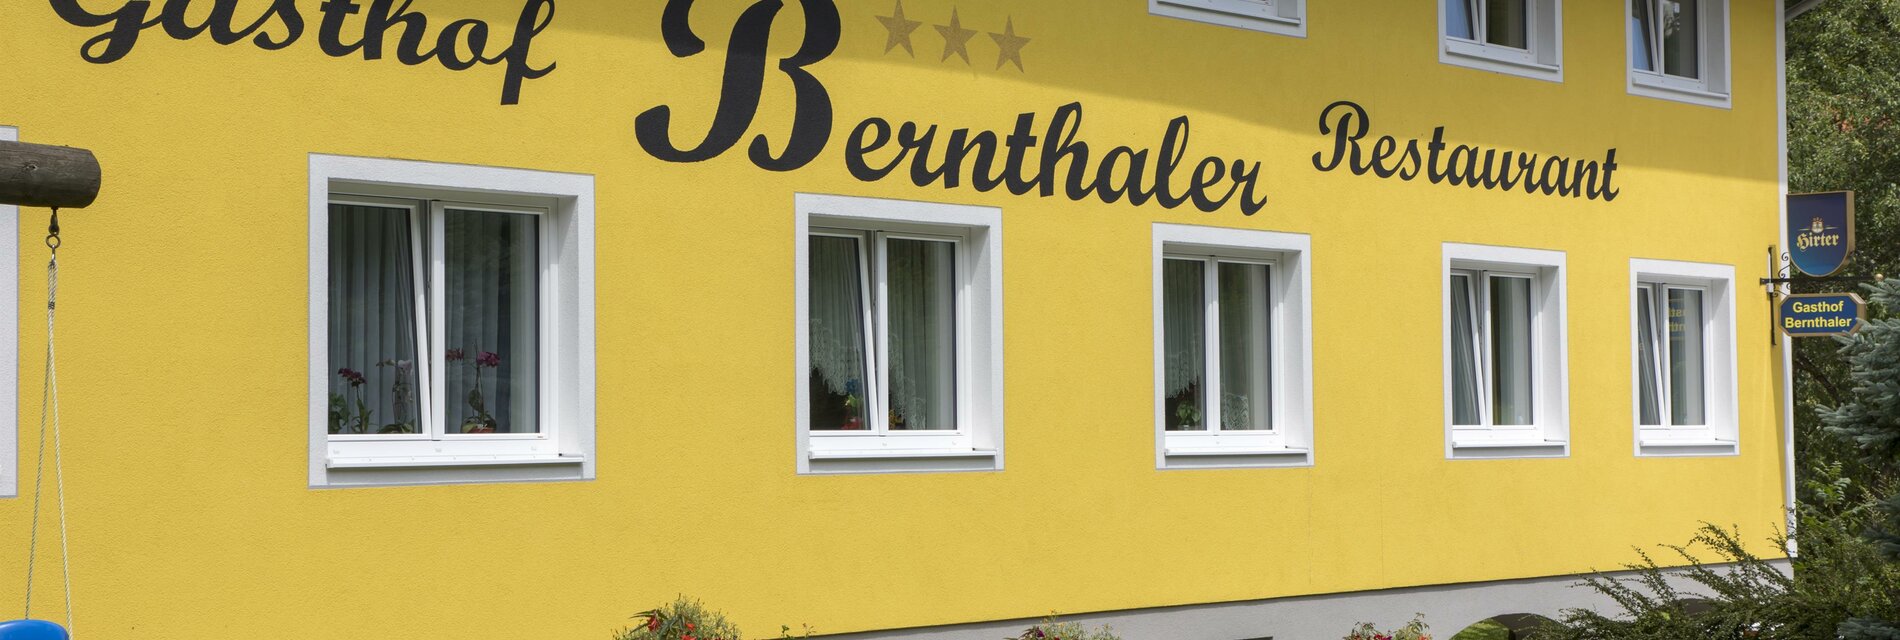 Gasthof Bernthaler Außenansicht